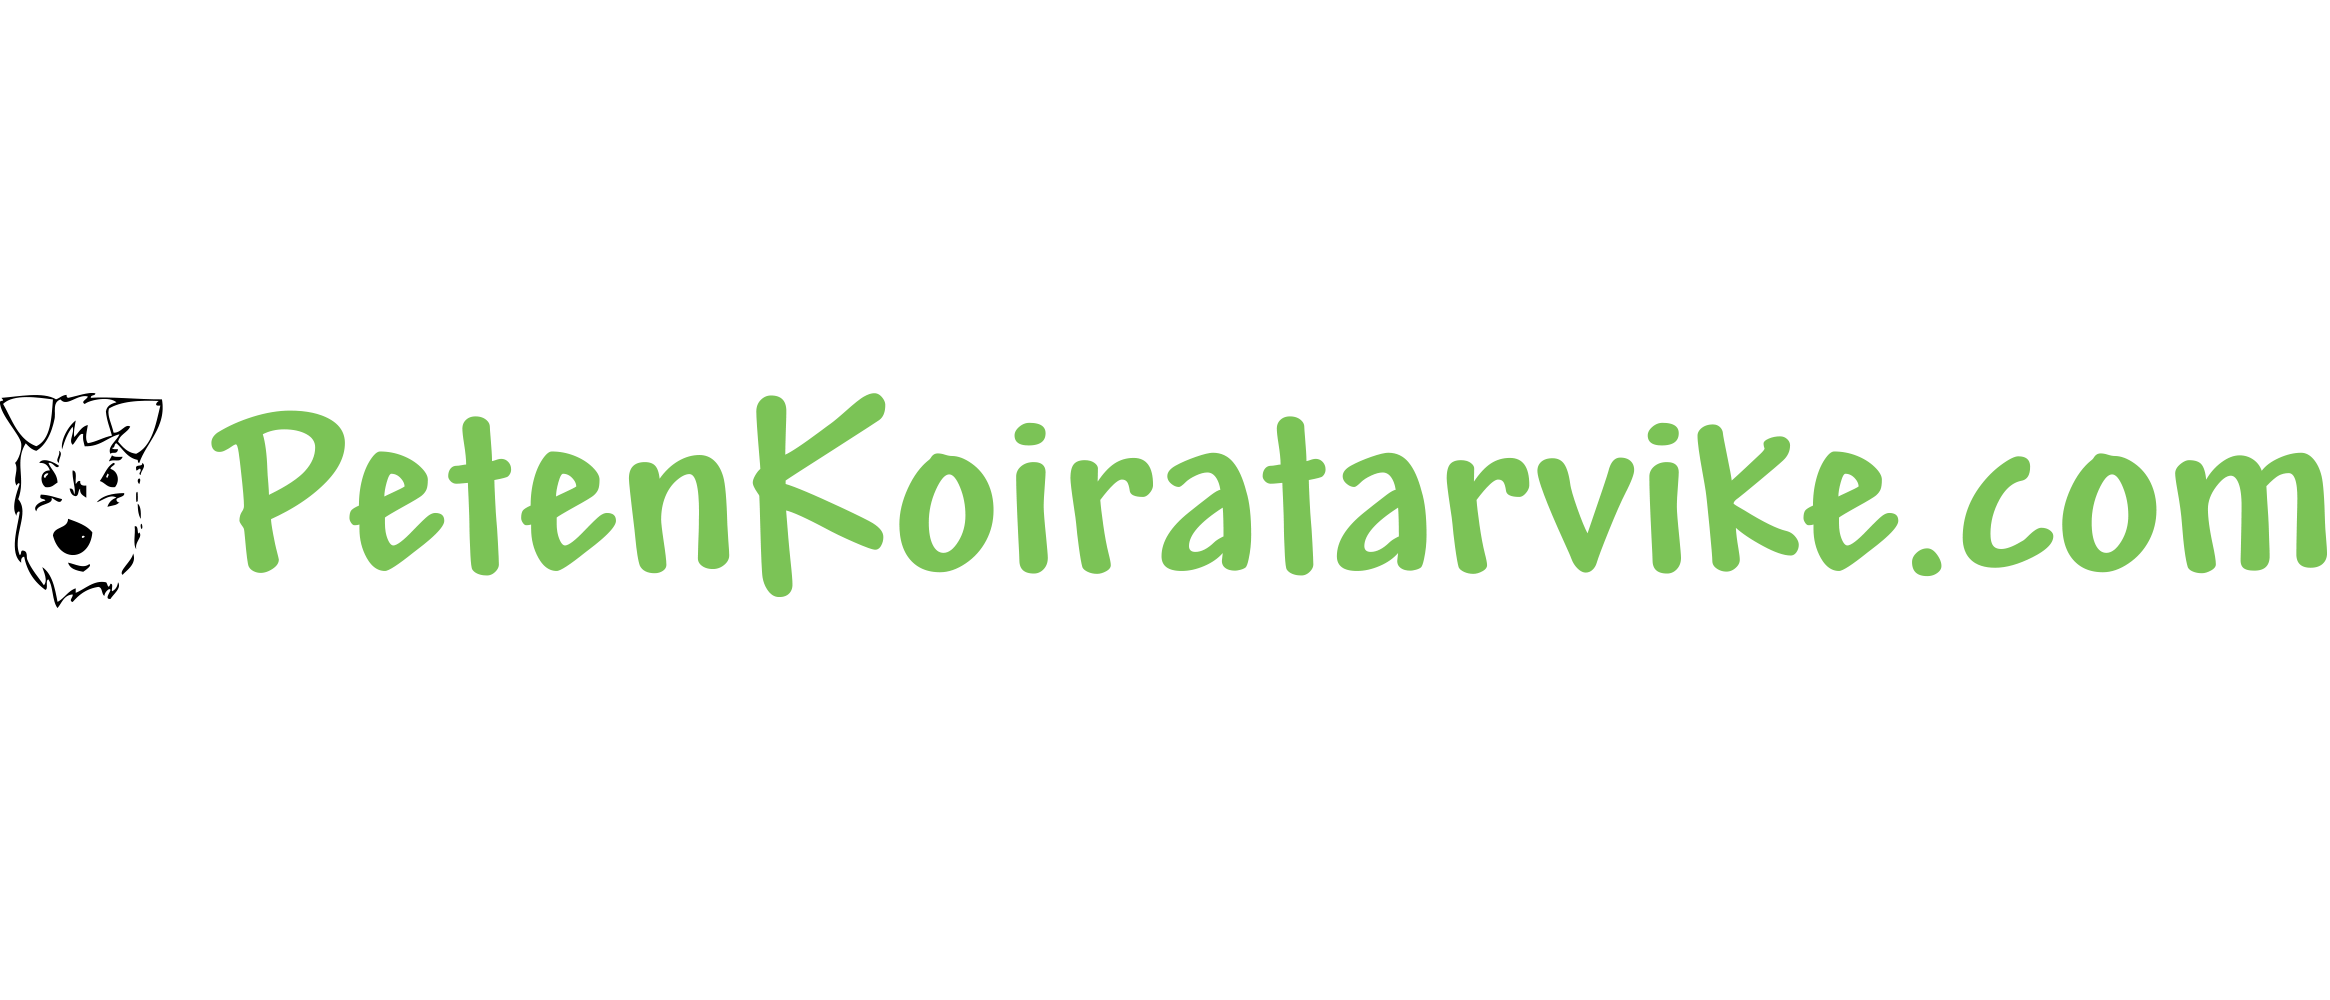 PetenKoiratarvike.com